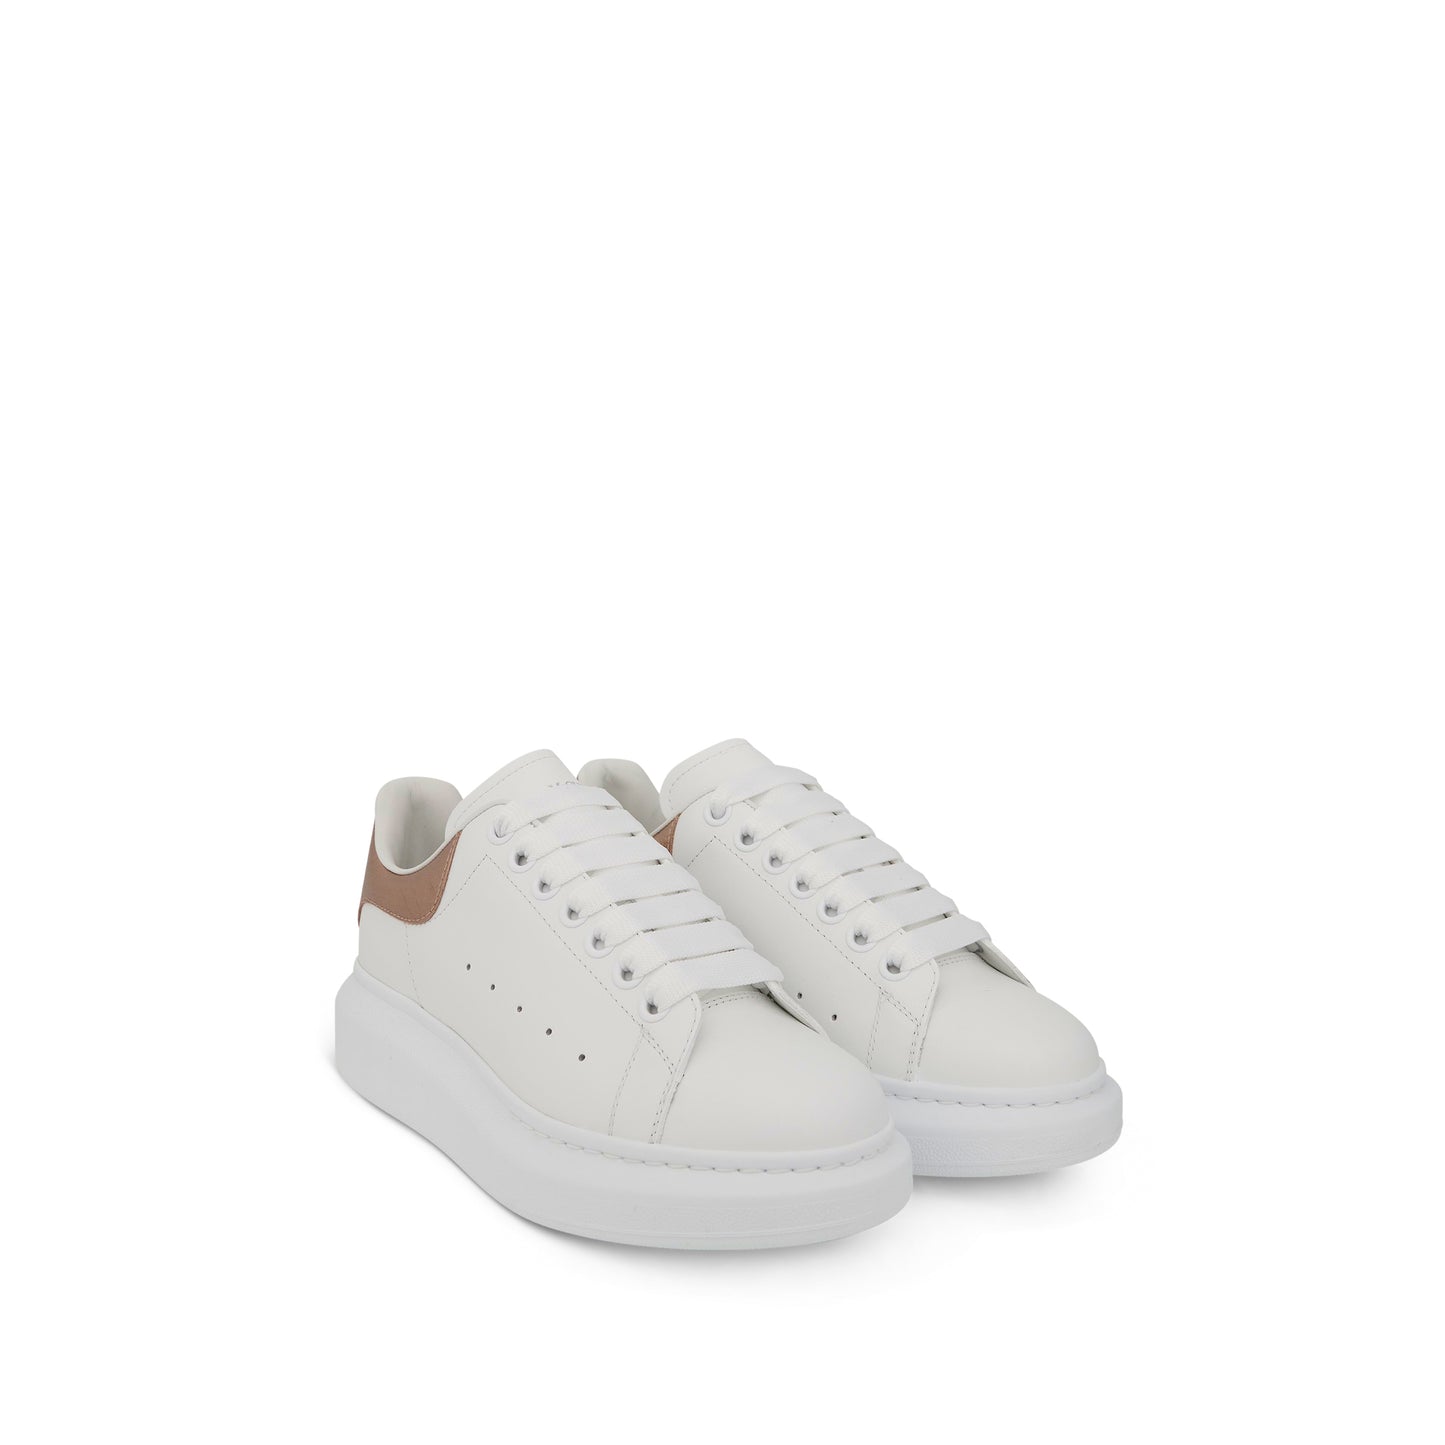 Larry Oversized Heel Sneaker in White/Rose Gold